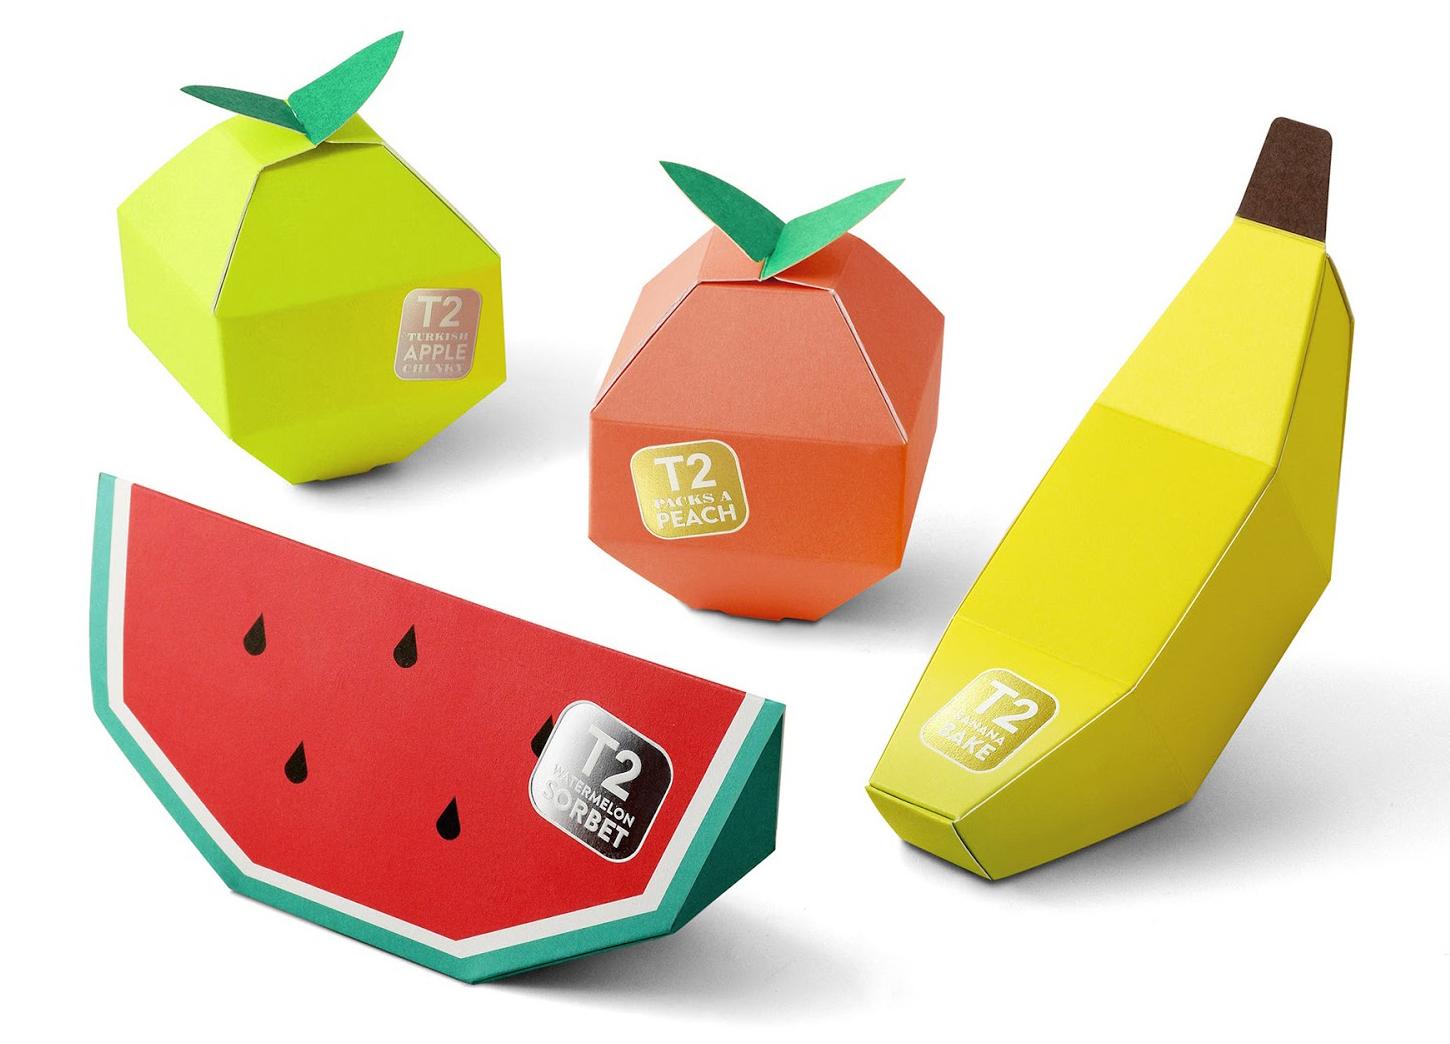 t2迷你水果茶的包装设计创意主要采用的是仿生设计概念,分别通过水果